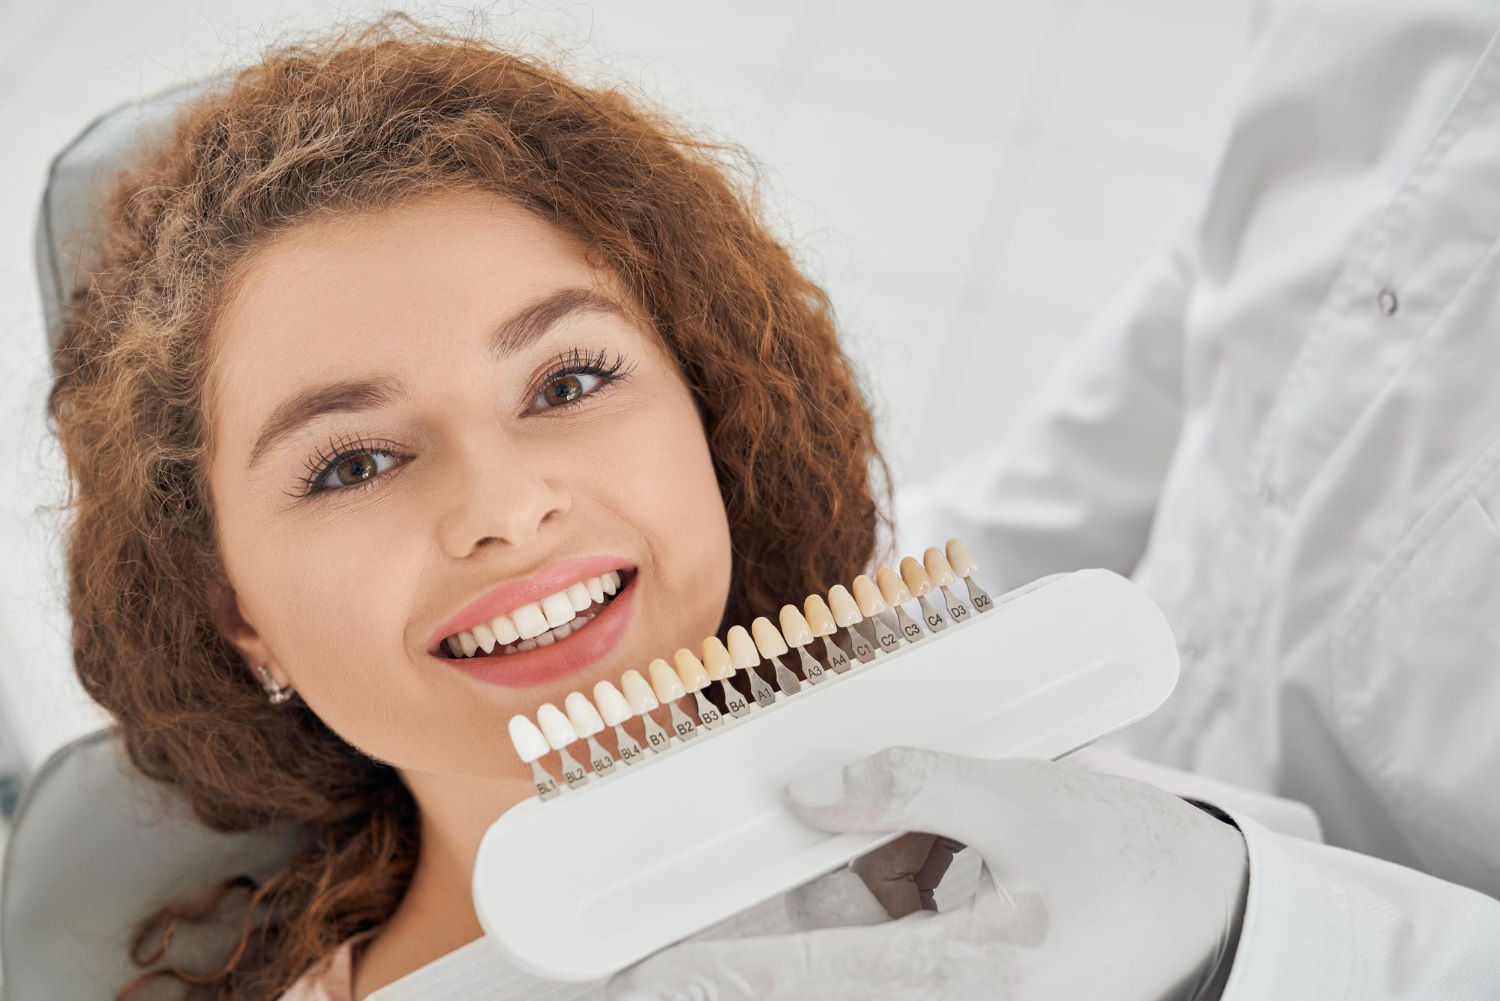 Wybielanie zębów w Poznaniu to popularny zabieg kosmetyczny, mający na celu poprawienie estetyki uśmiechu